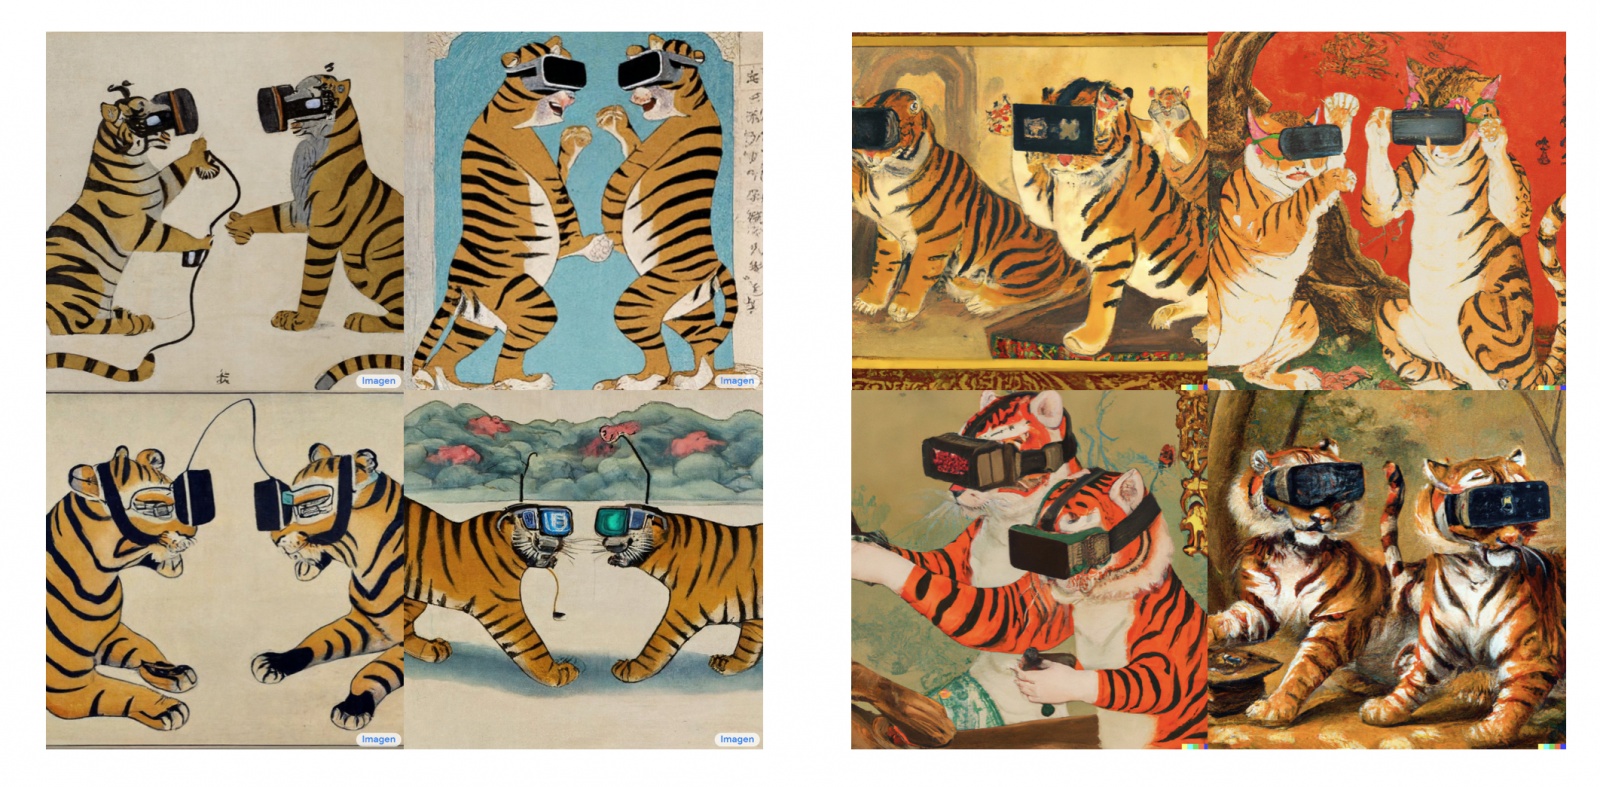 Запрос: “Oriental painting of tigers wearing VR headsets during the Song dynasty” (“Ориентальная картина с тиграми в очках виртуальной реальности времен династии Сун”), слева Imagen, справа – DALL-E 2Источник:  https://twitter.com/hardmaru/status/1532757753797586944